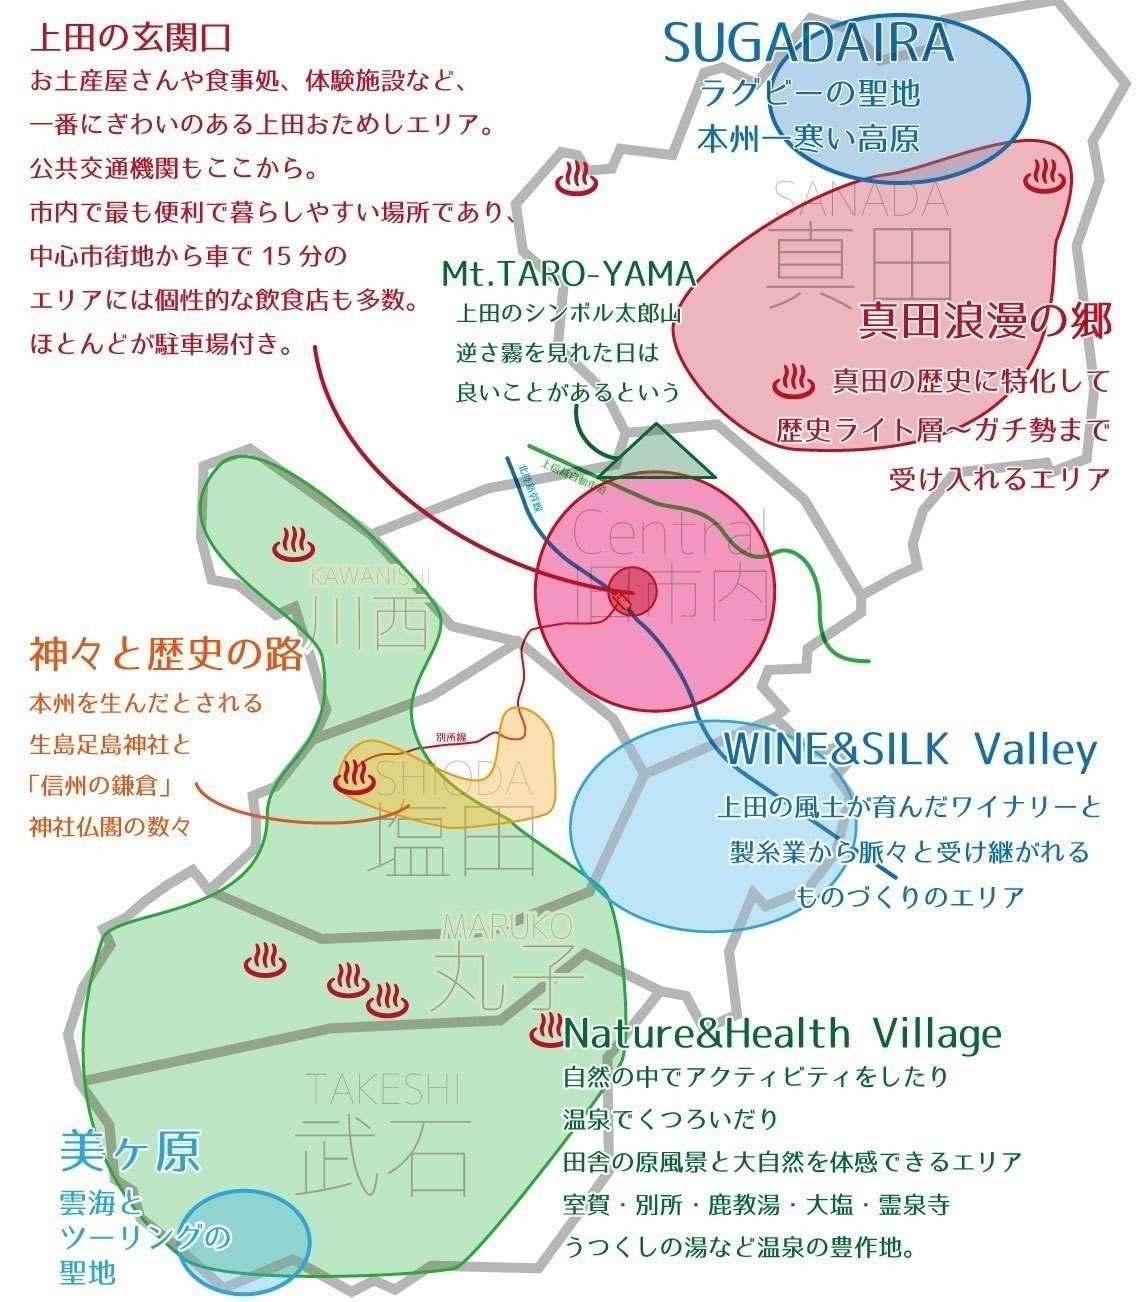 2018-10-20上田観光デザインマップ